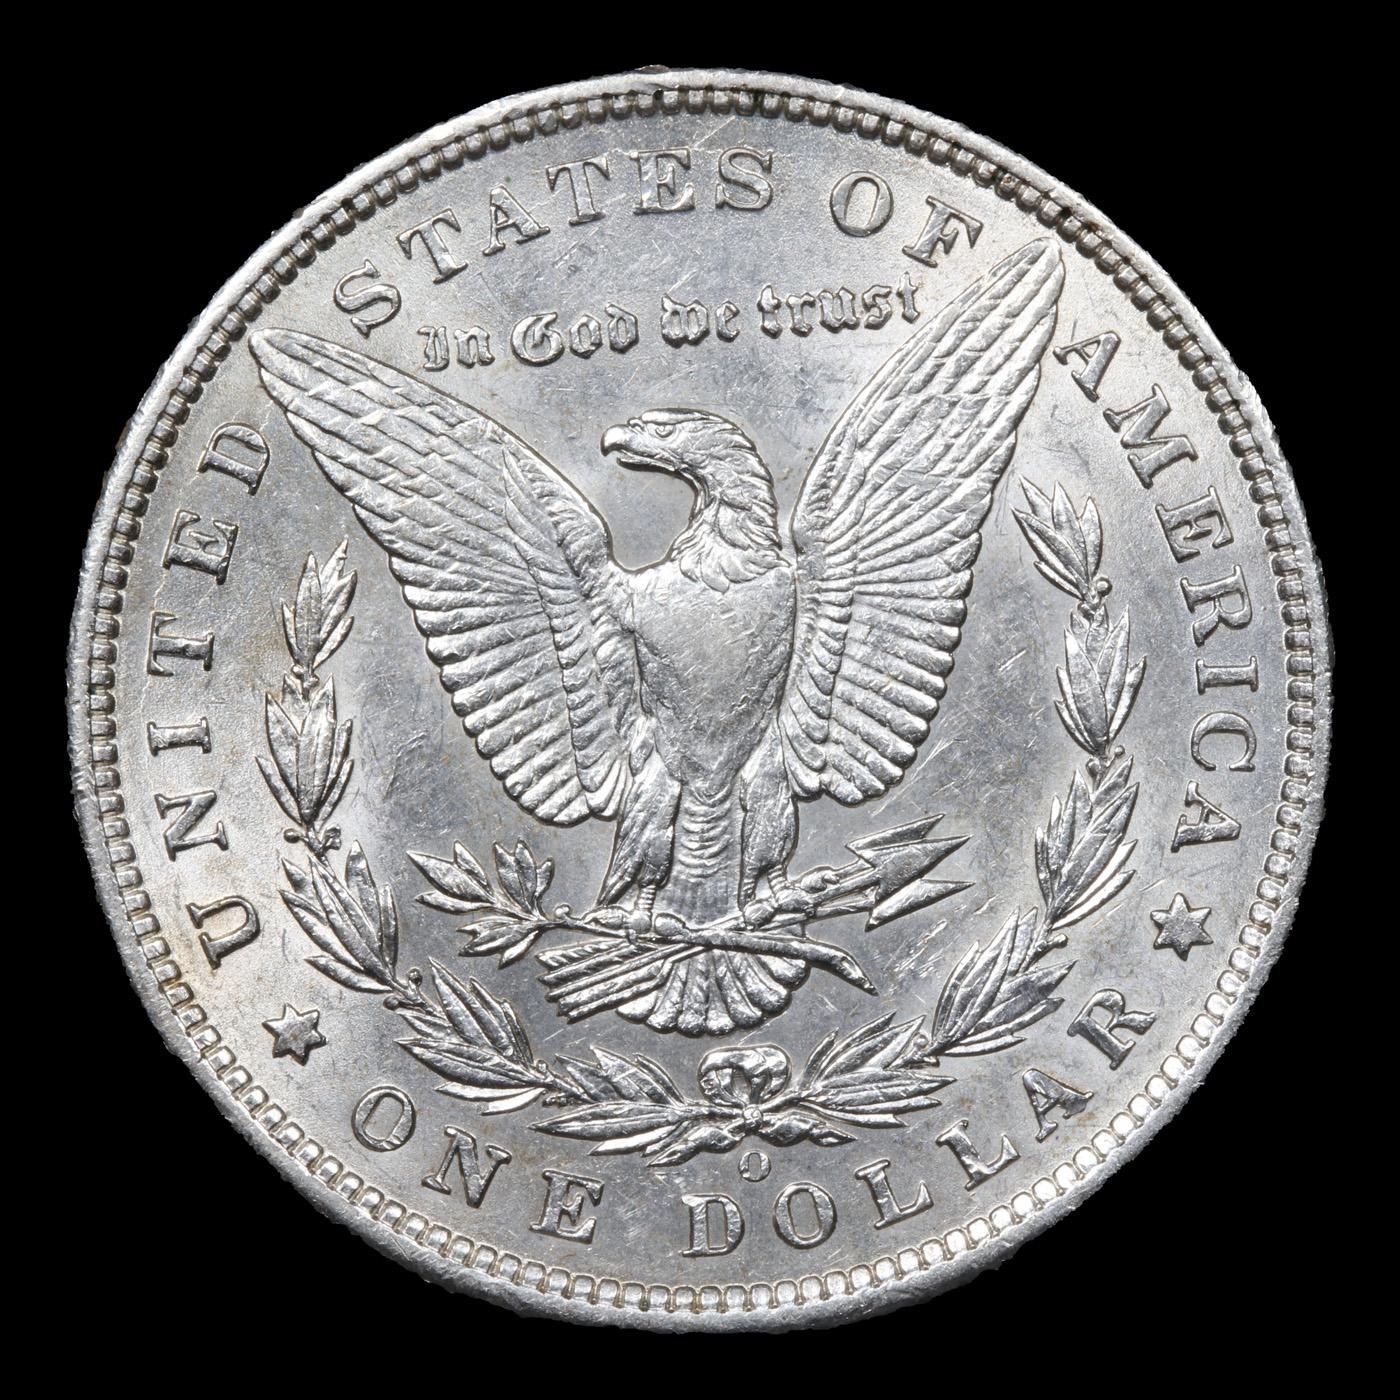 1897-o Morgan Dollar $1 Grades Choice AU/BU Slider